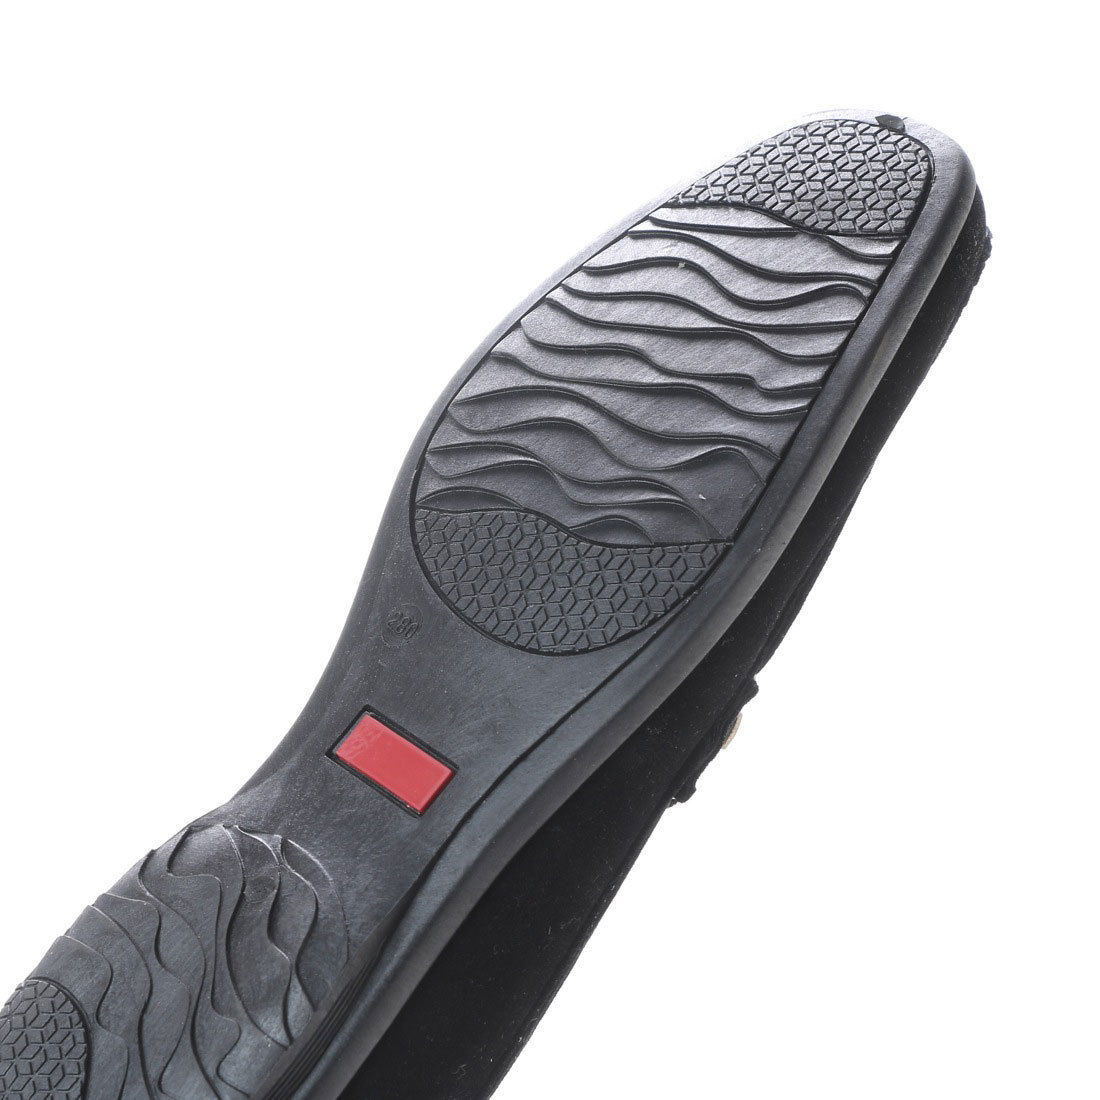 28.0cm ブラック 黒 アウトレット ドライビング シューズ メンズ ビット ローファー スエード調 靴 15109-blk-280